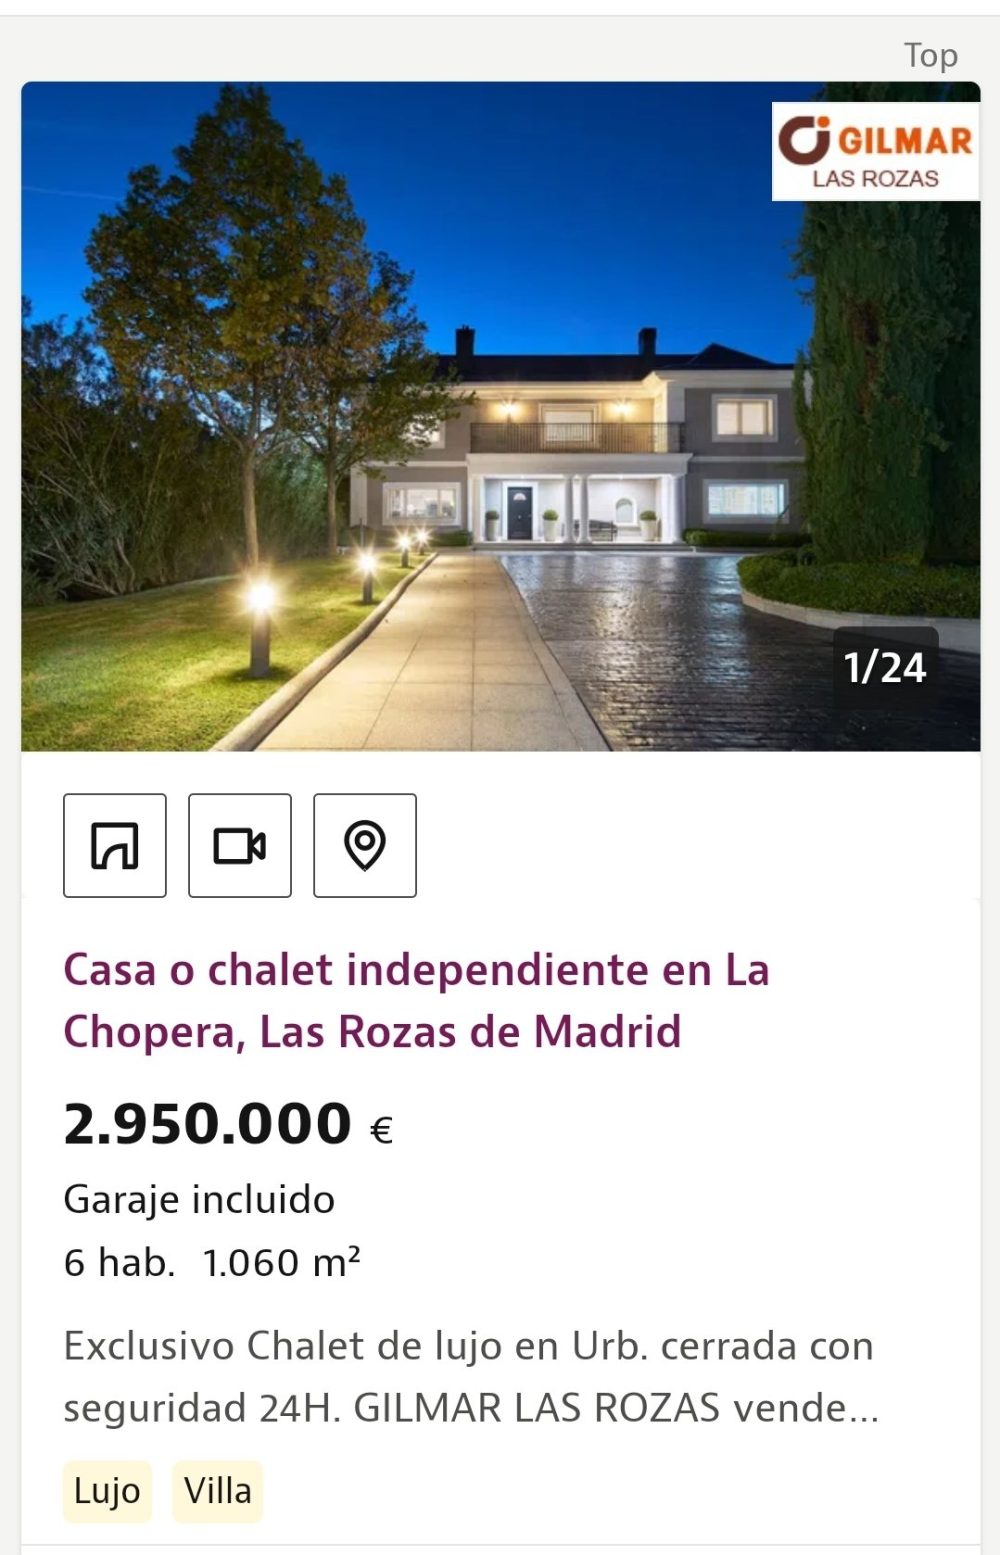 Tienes 3 millones de euros y te los puedes gastar en una de estas dos viviendas.